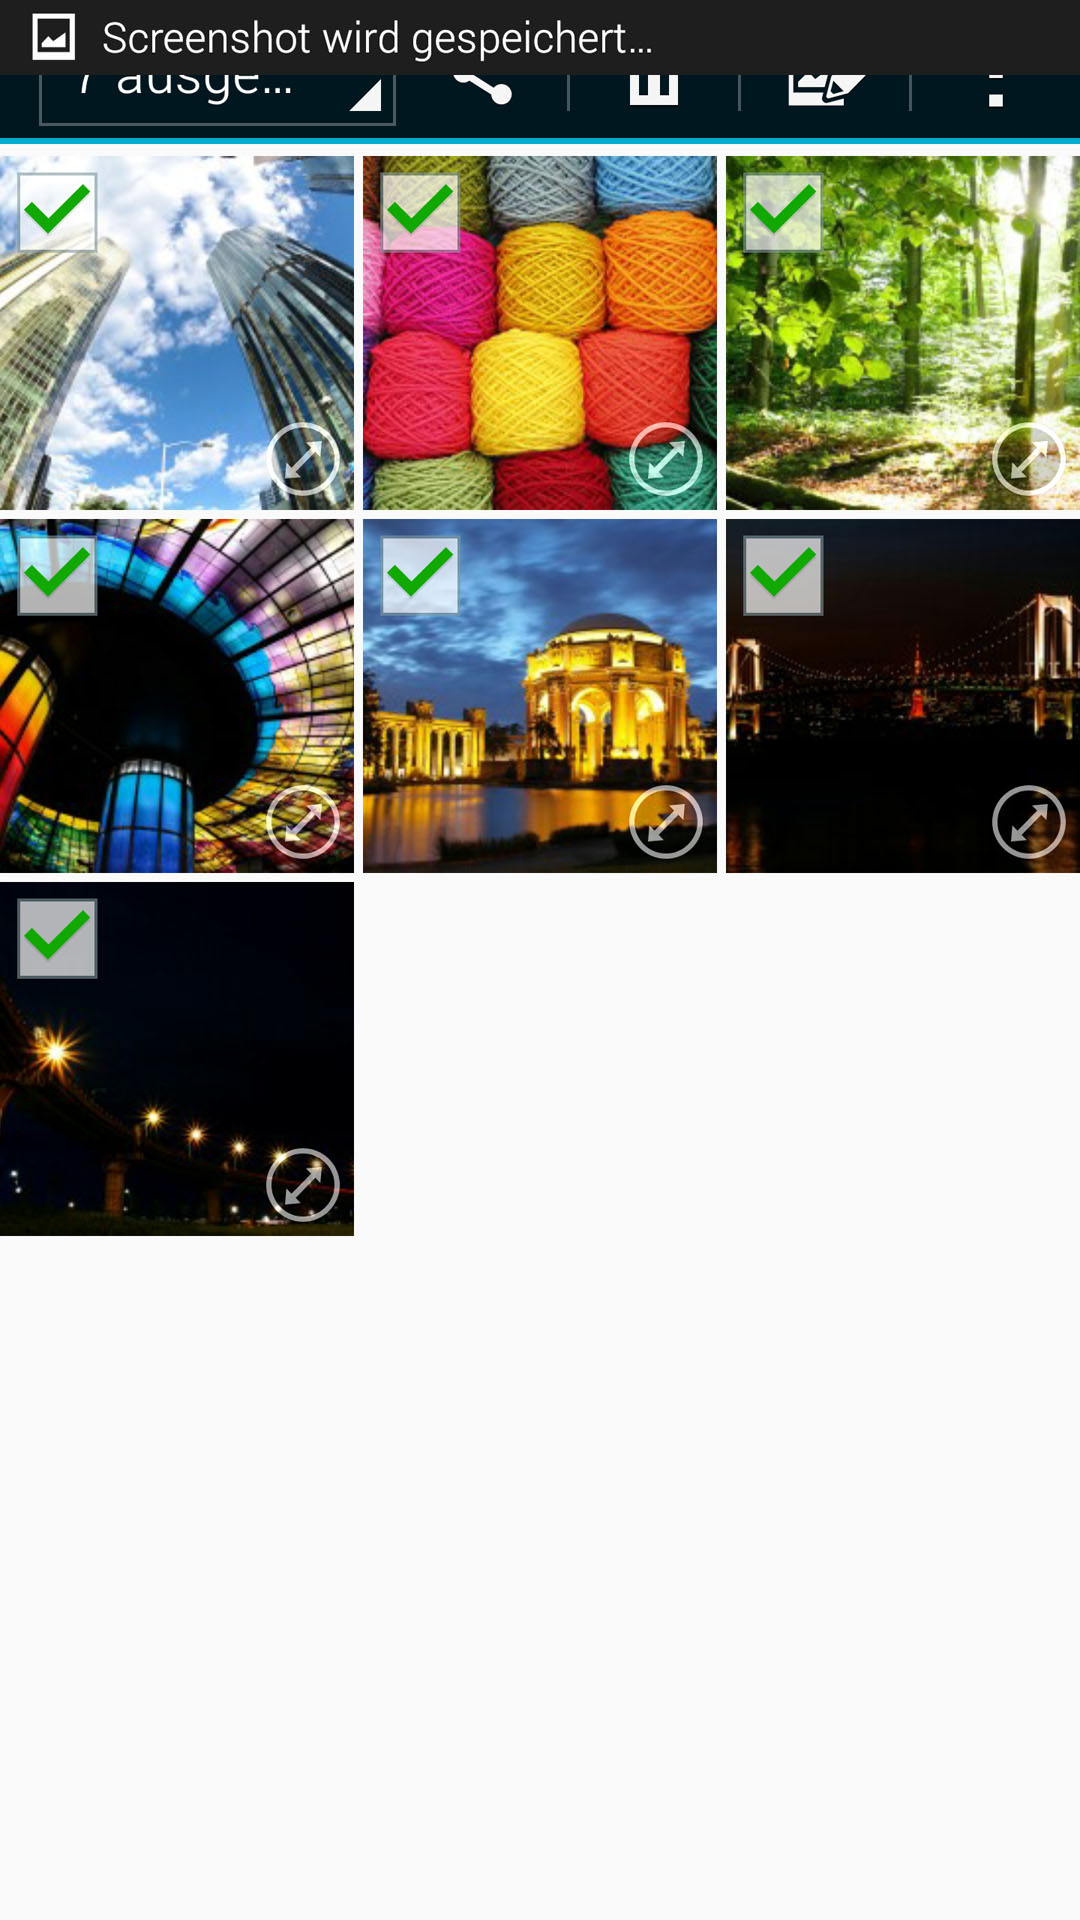 Samsung Galaxy Note 4 - Auswahl mehrerer Bilder 2